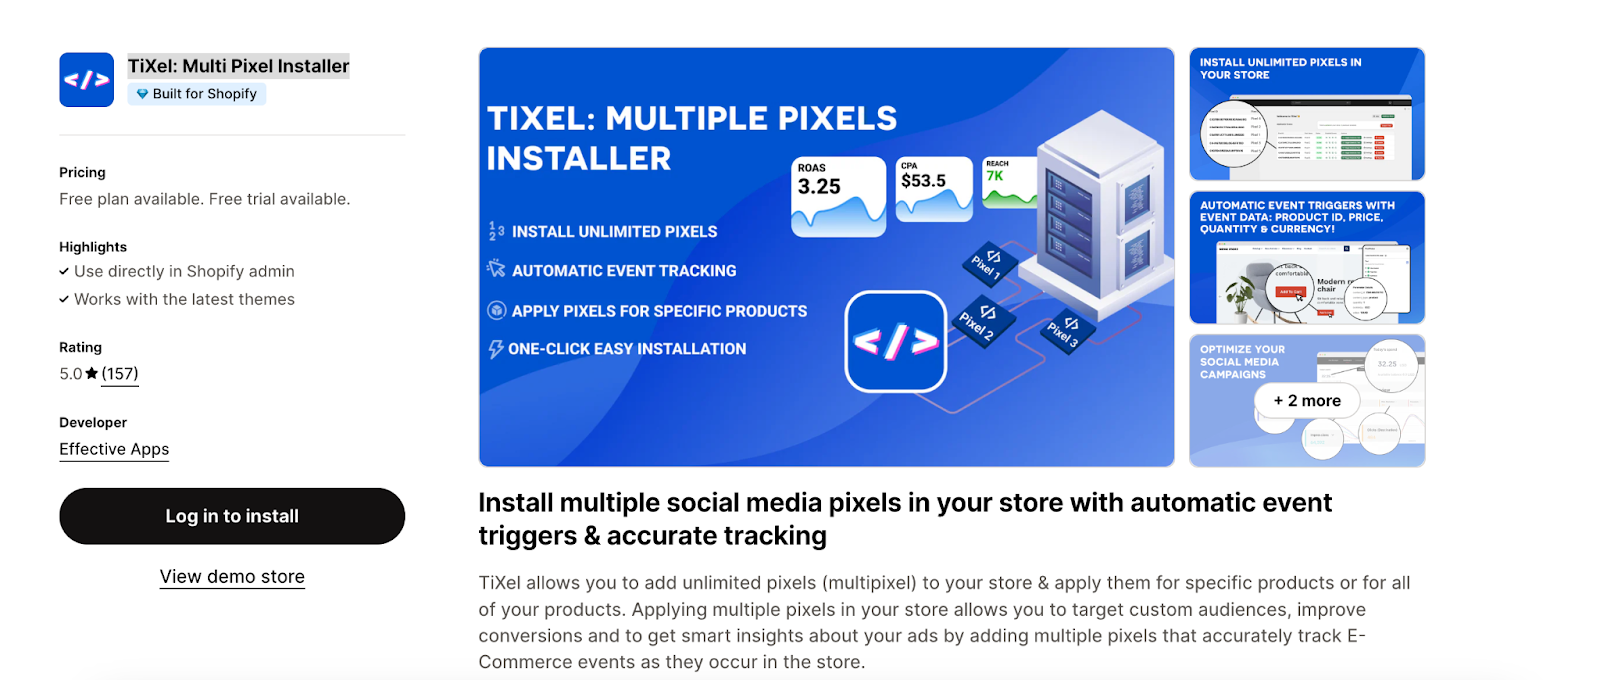 TiXel: Multi Pixel Installer